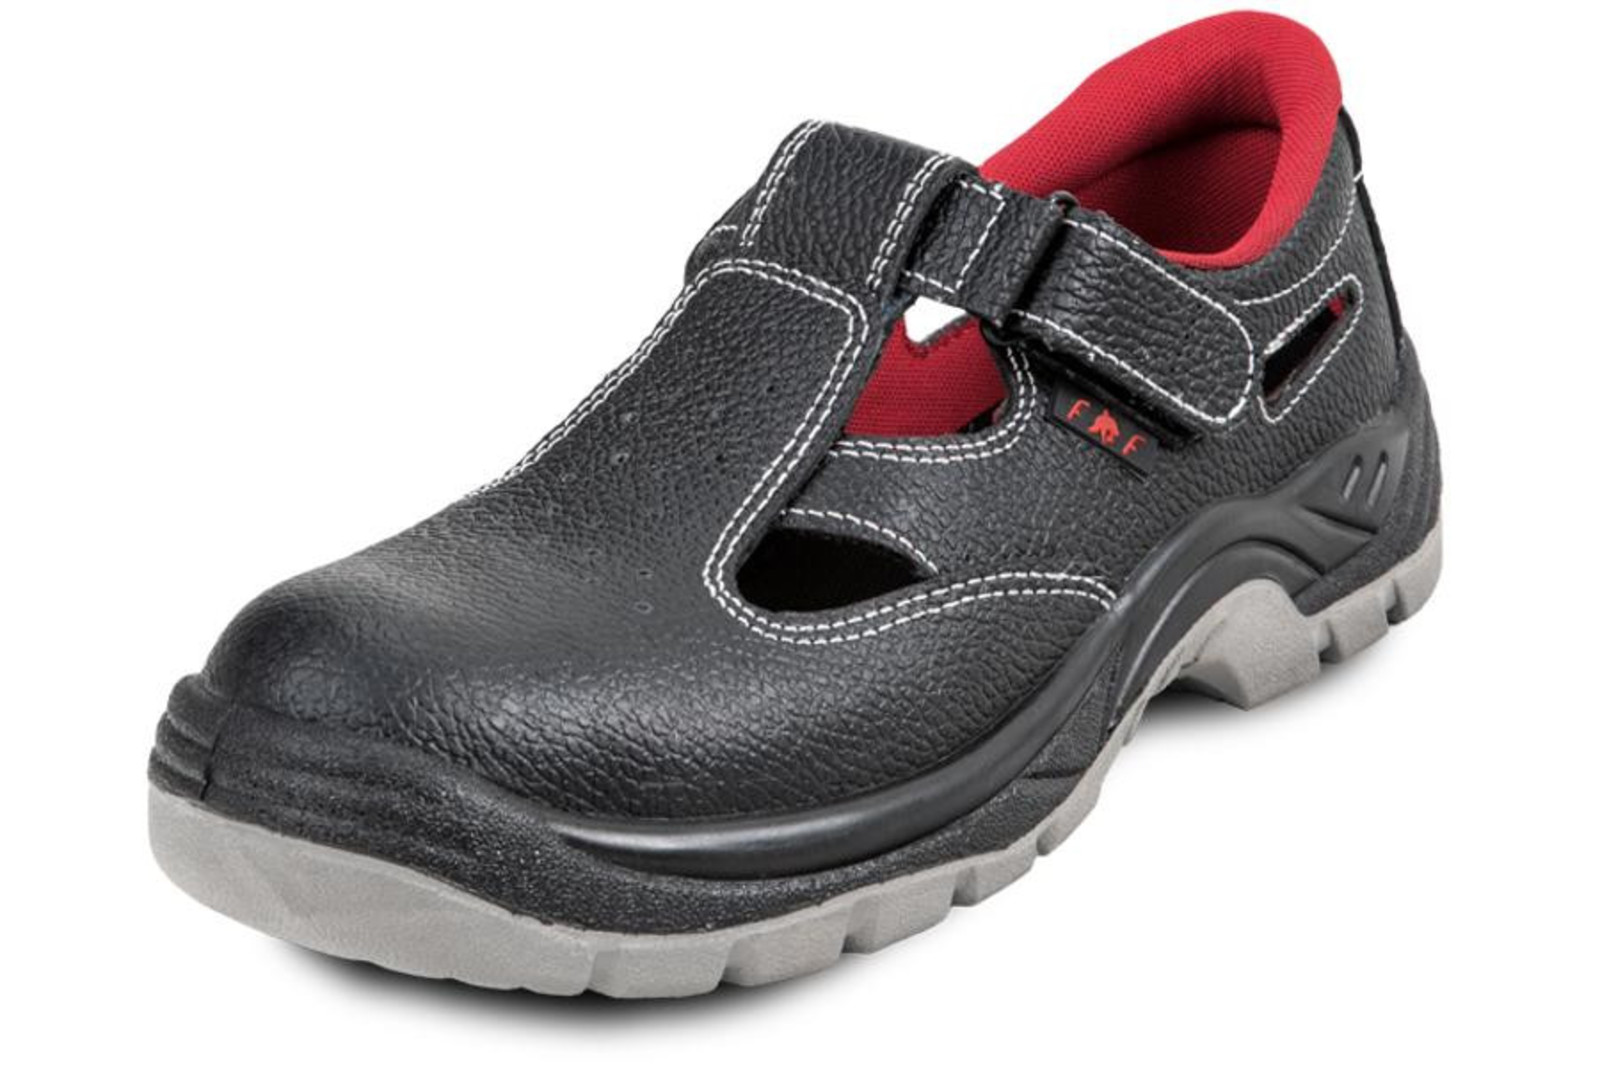 Pracovné sandále Bonn SC 01-002 O1 - veľkosť: 41, farba: čierna